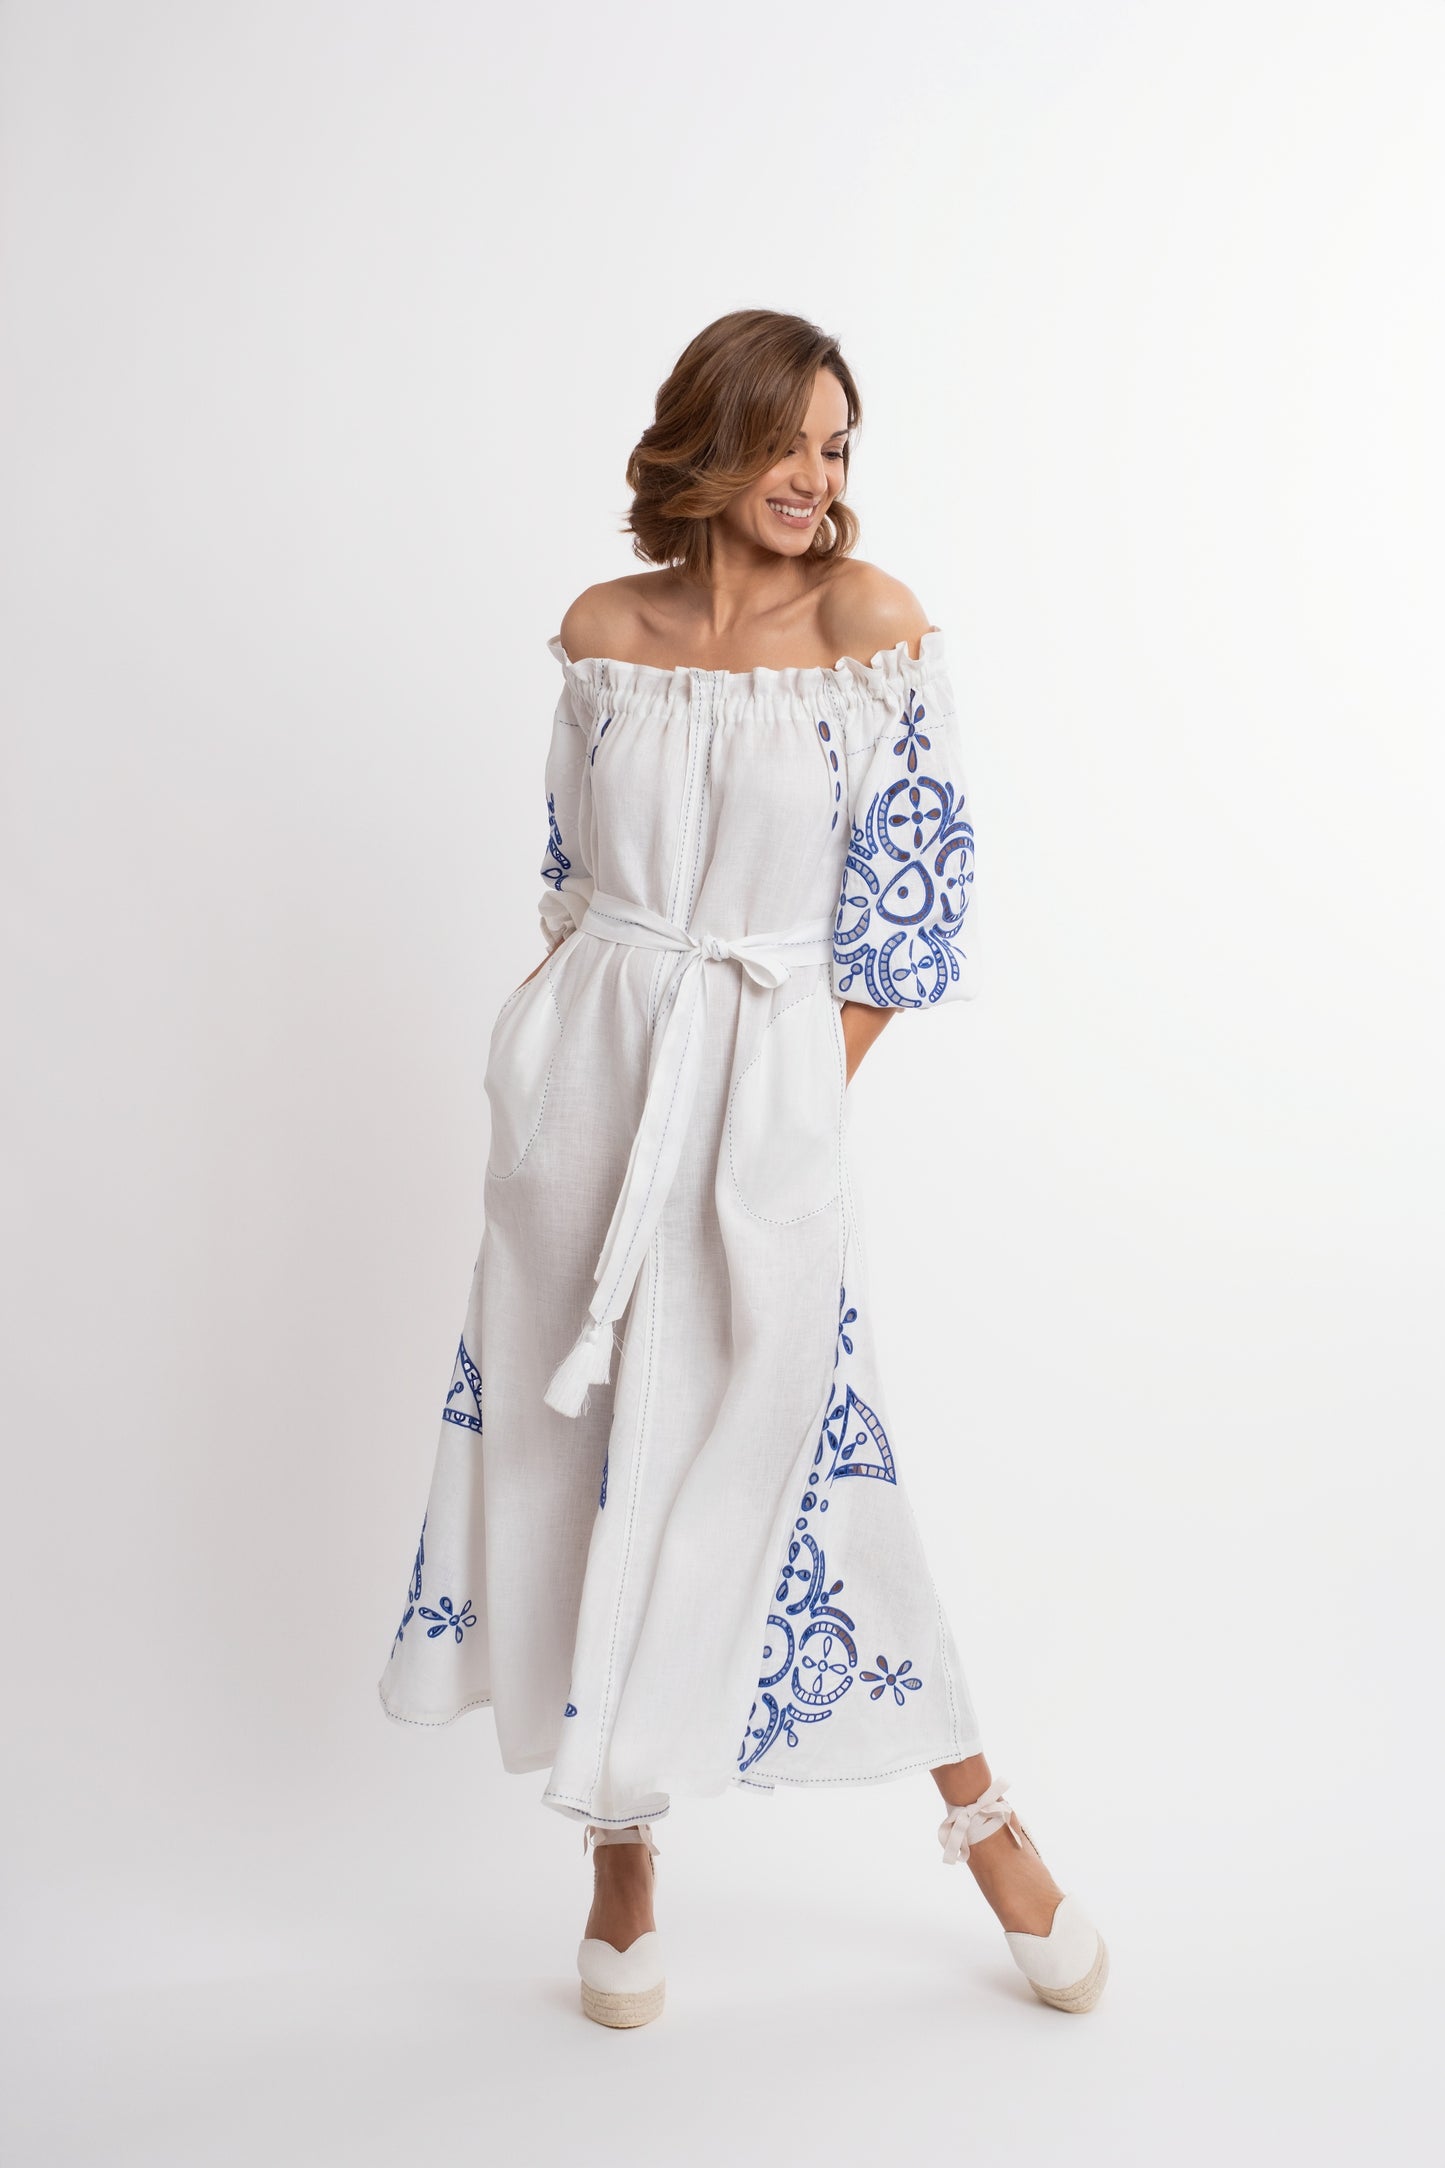 Mikonos: Vestido de lino blanco con escote de barco y cinturón, bordado en azul.